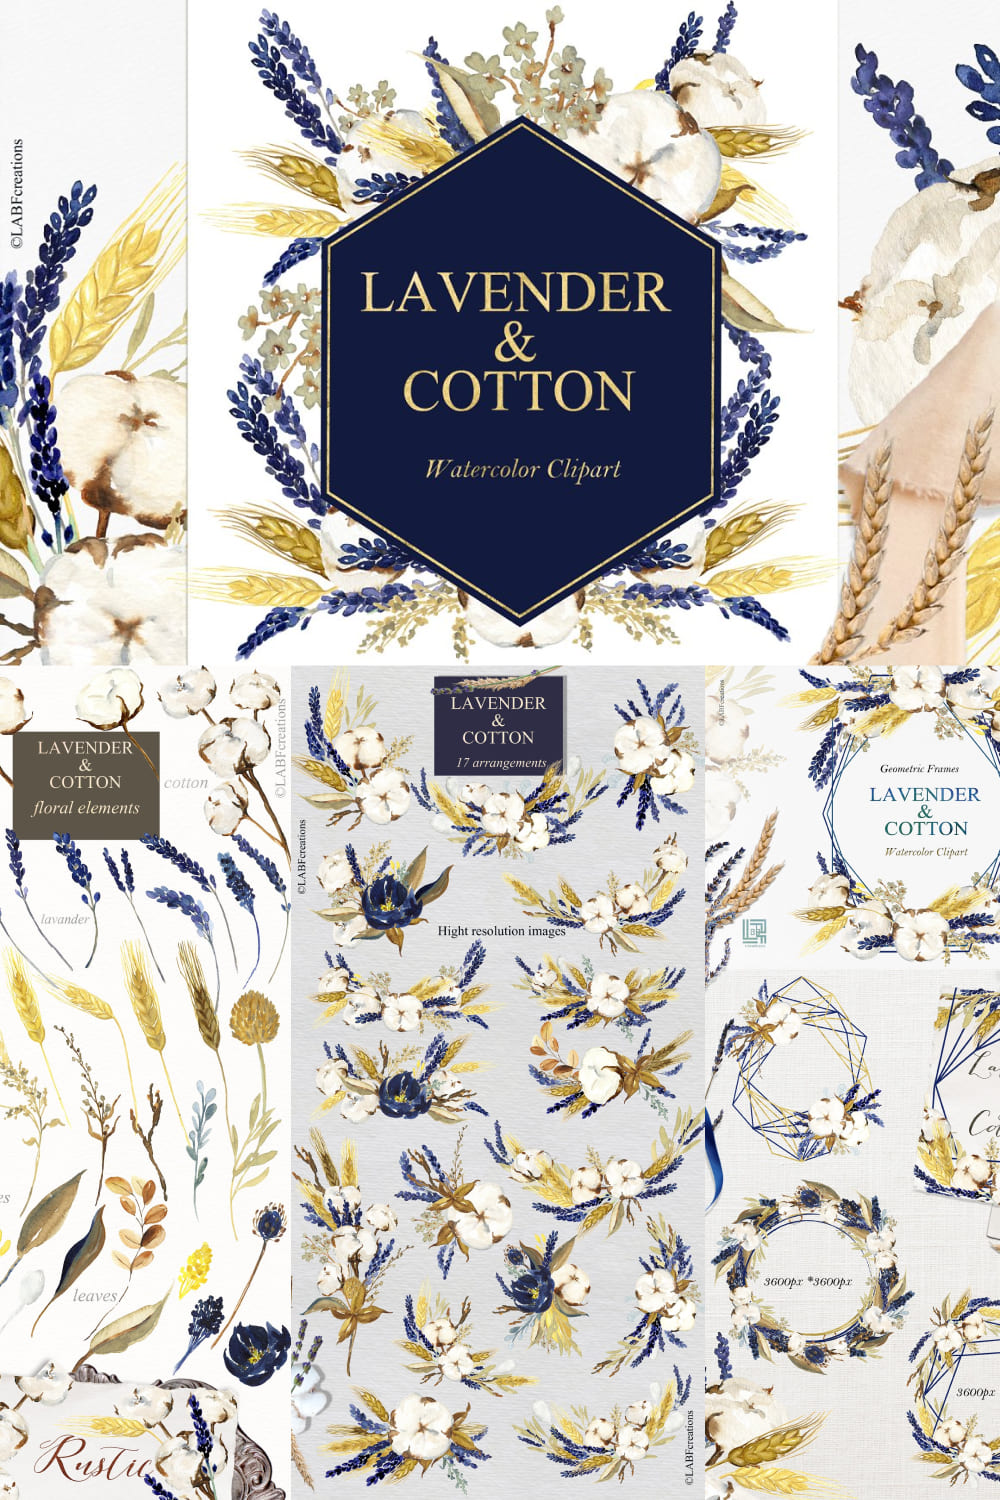 Lavender & Cotton Watercolor Clipart pinterest image.